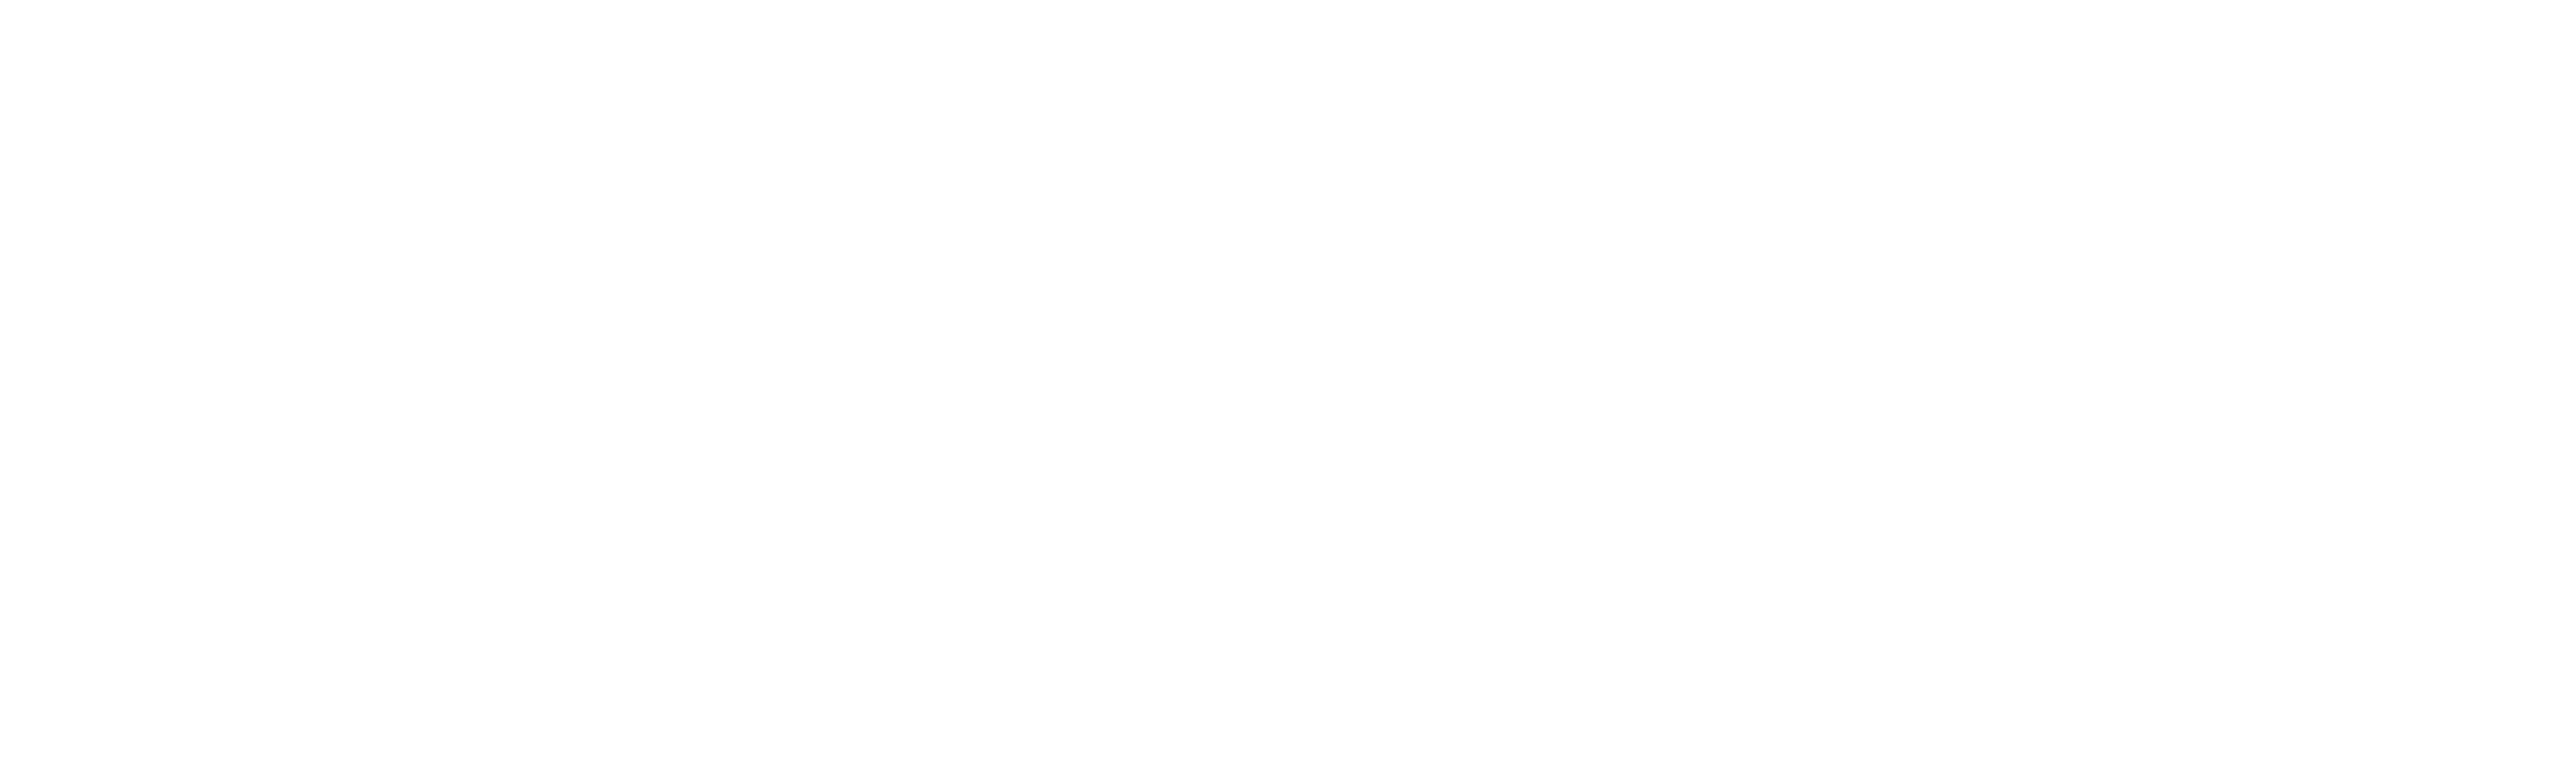 Boomtownroi Logo - BoomTown! Unite - April 1-3, 2019